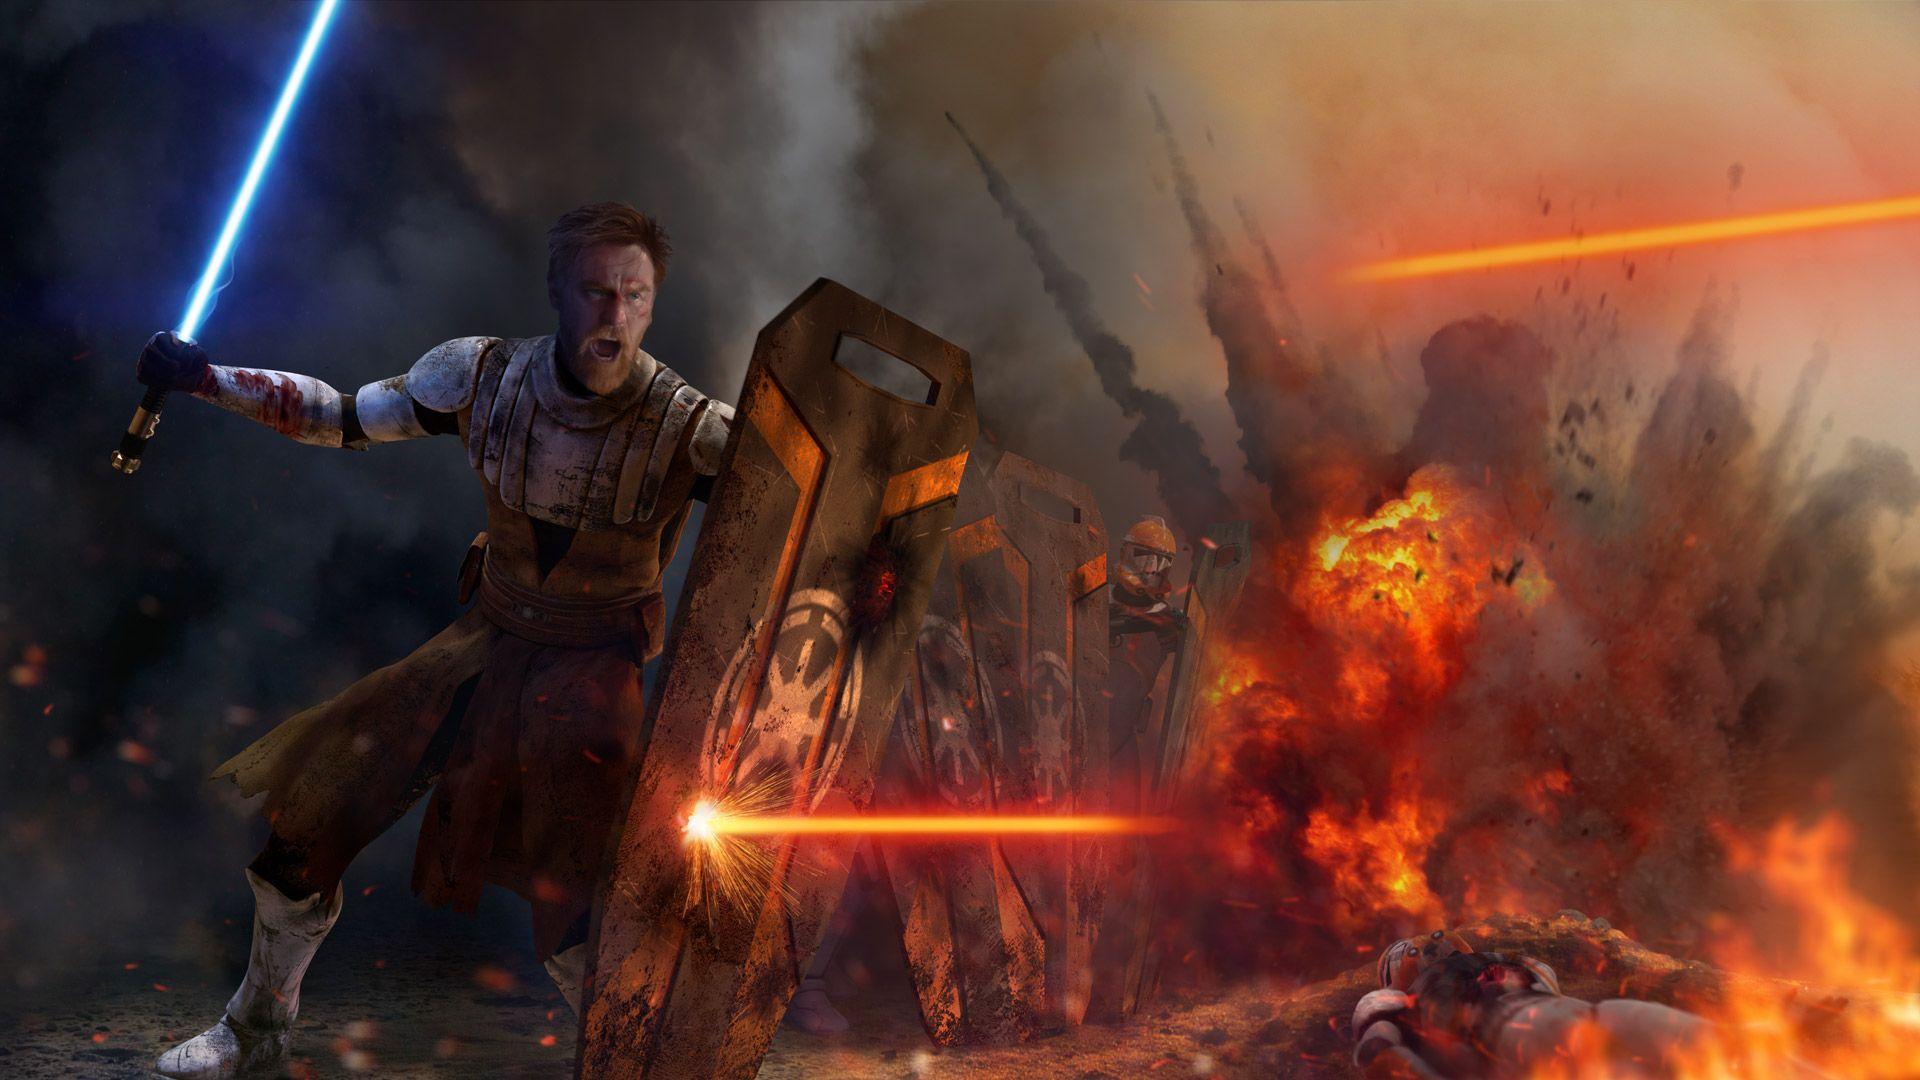 Obi Wan Kenobi Artwork, HD Movies, 4k Wallpaper, Image